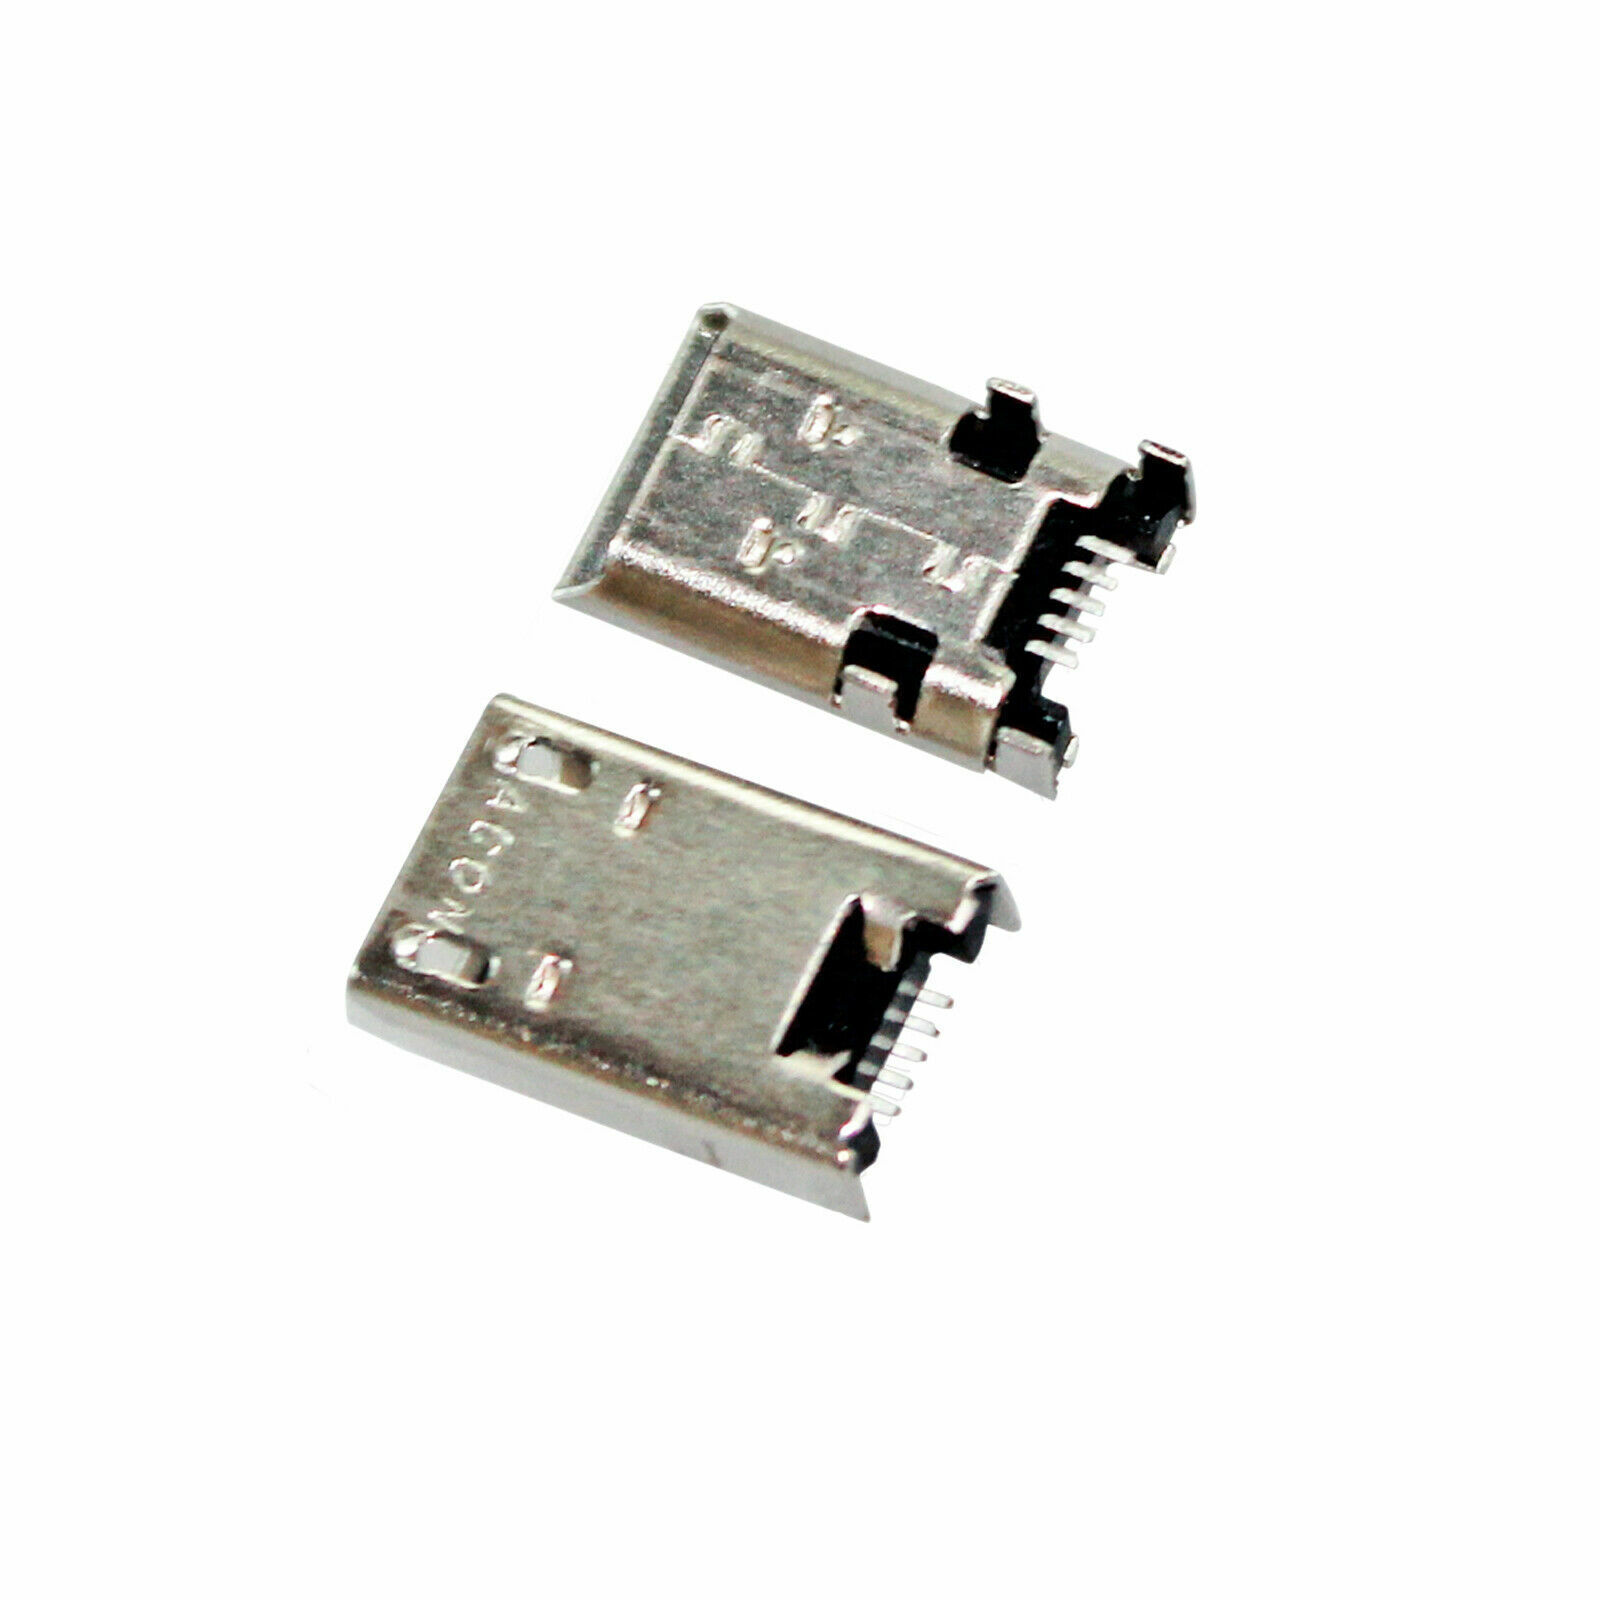 2X New Micro USB Charging Port ASUS Transformer Book T100T T100TA T100TAF GSA Unbranded/Generic 470-0371-308